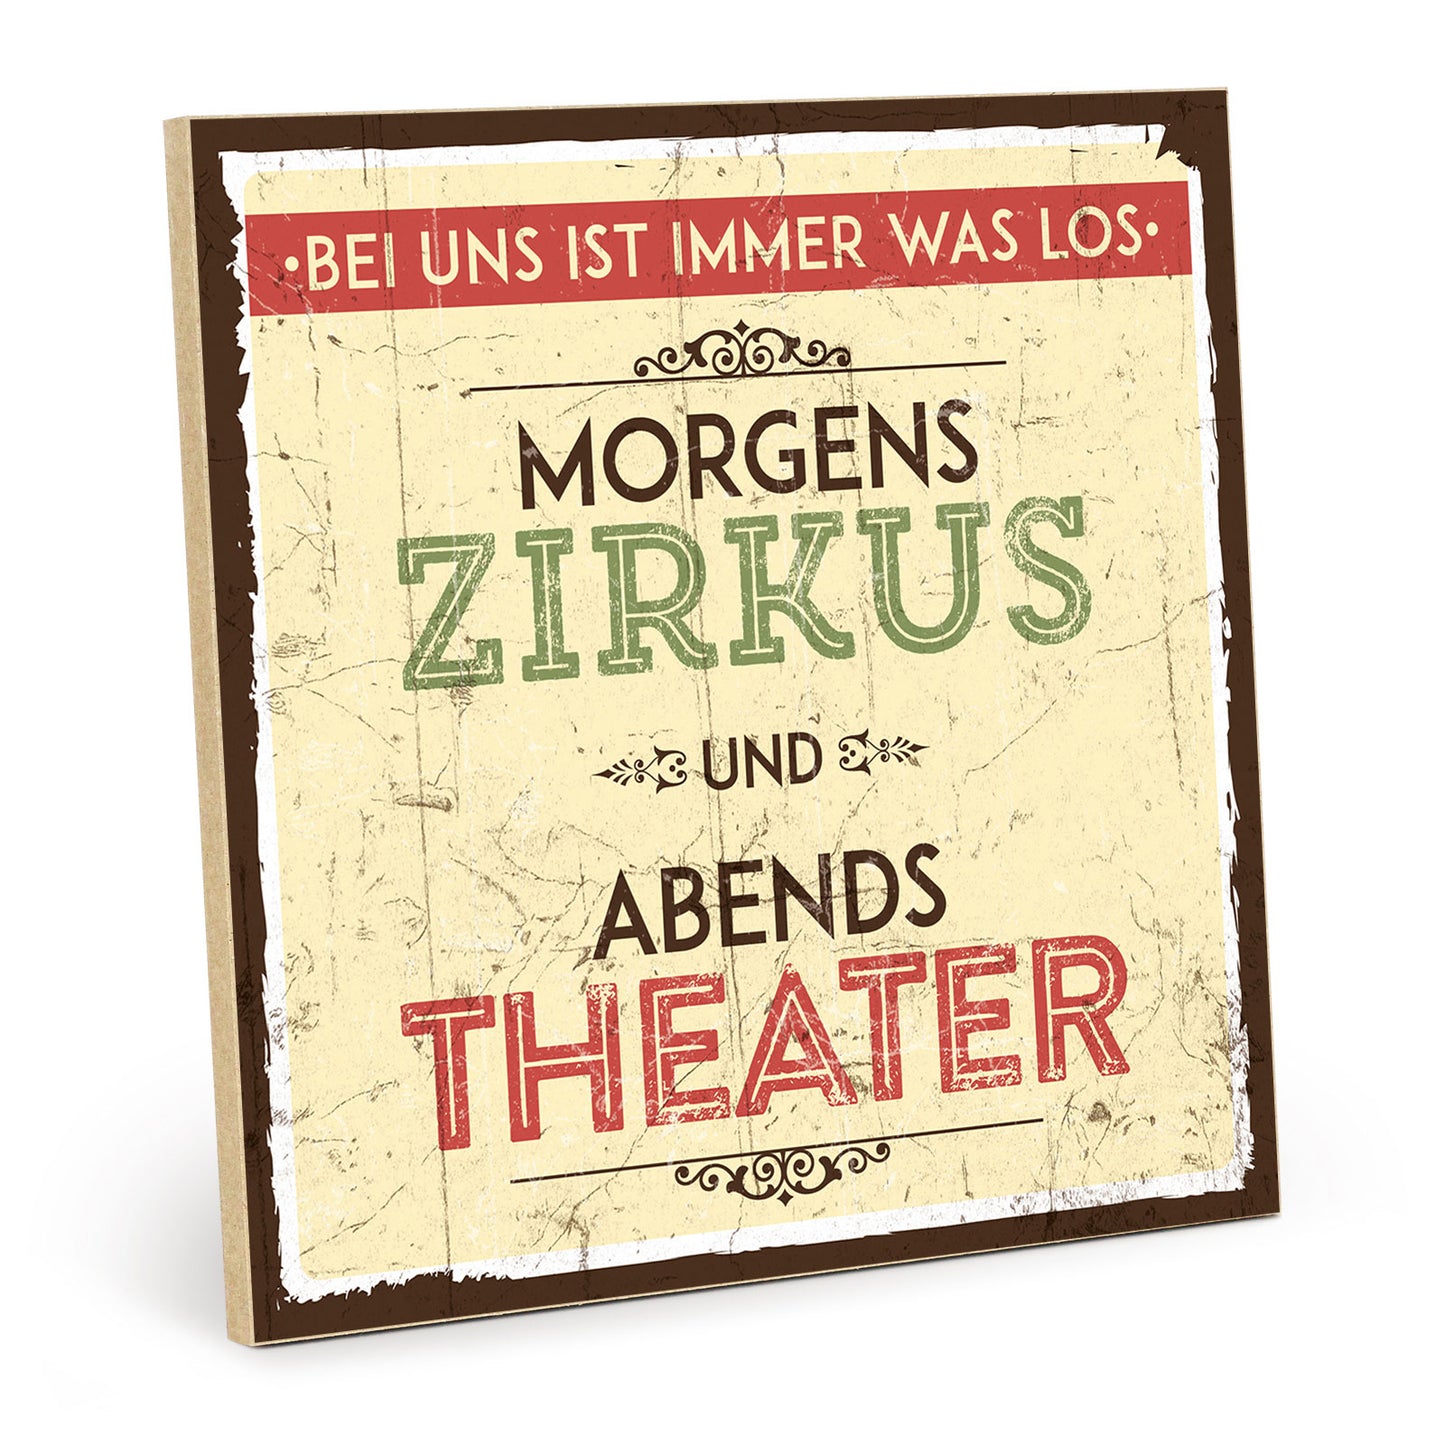 Holzschild mit Spruch - Familie - Zirkus - Theater – HS-QN-00182